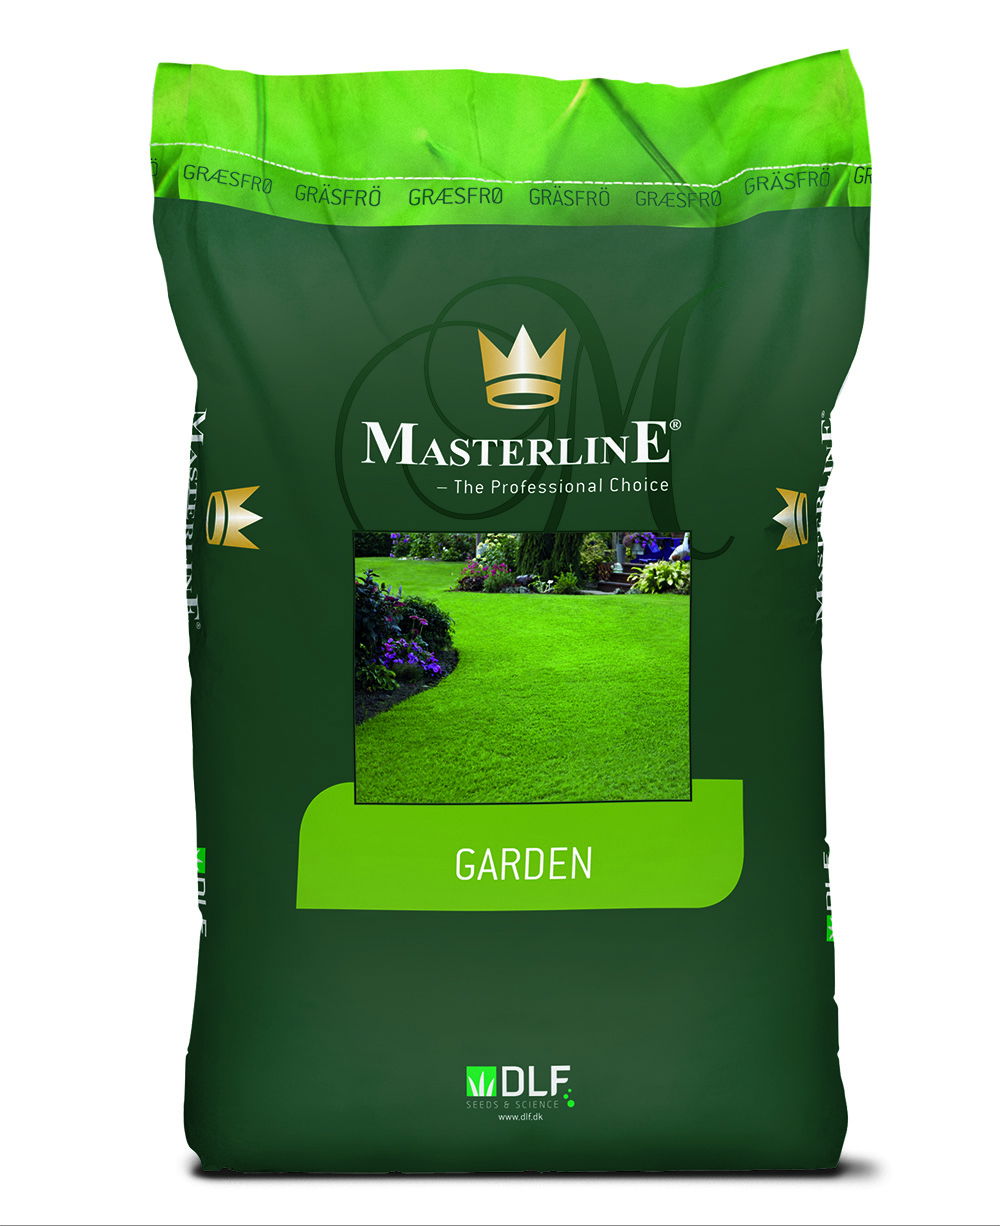 Masterline Skygge græs – 15 kg. græsfrø